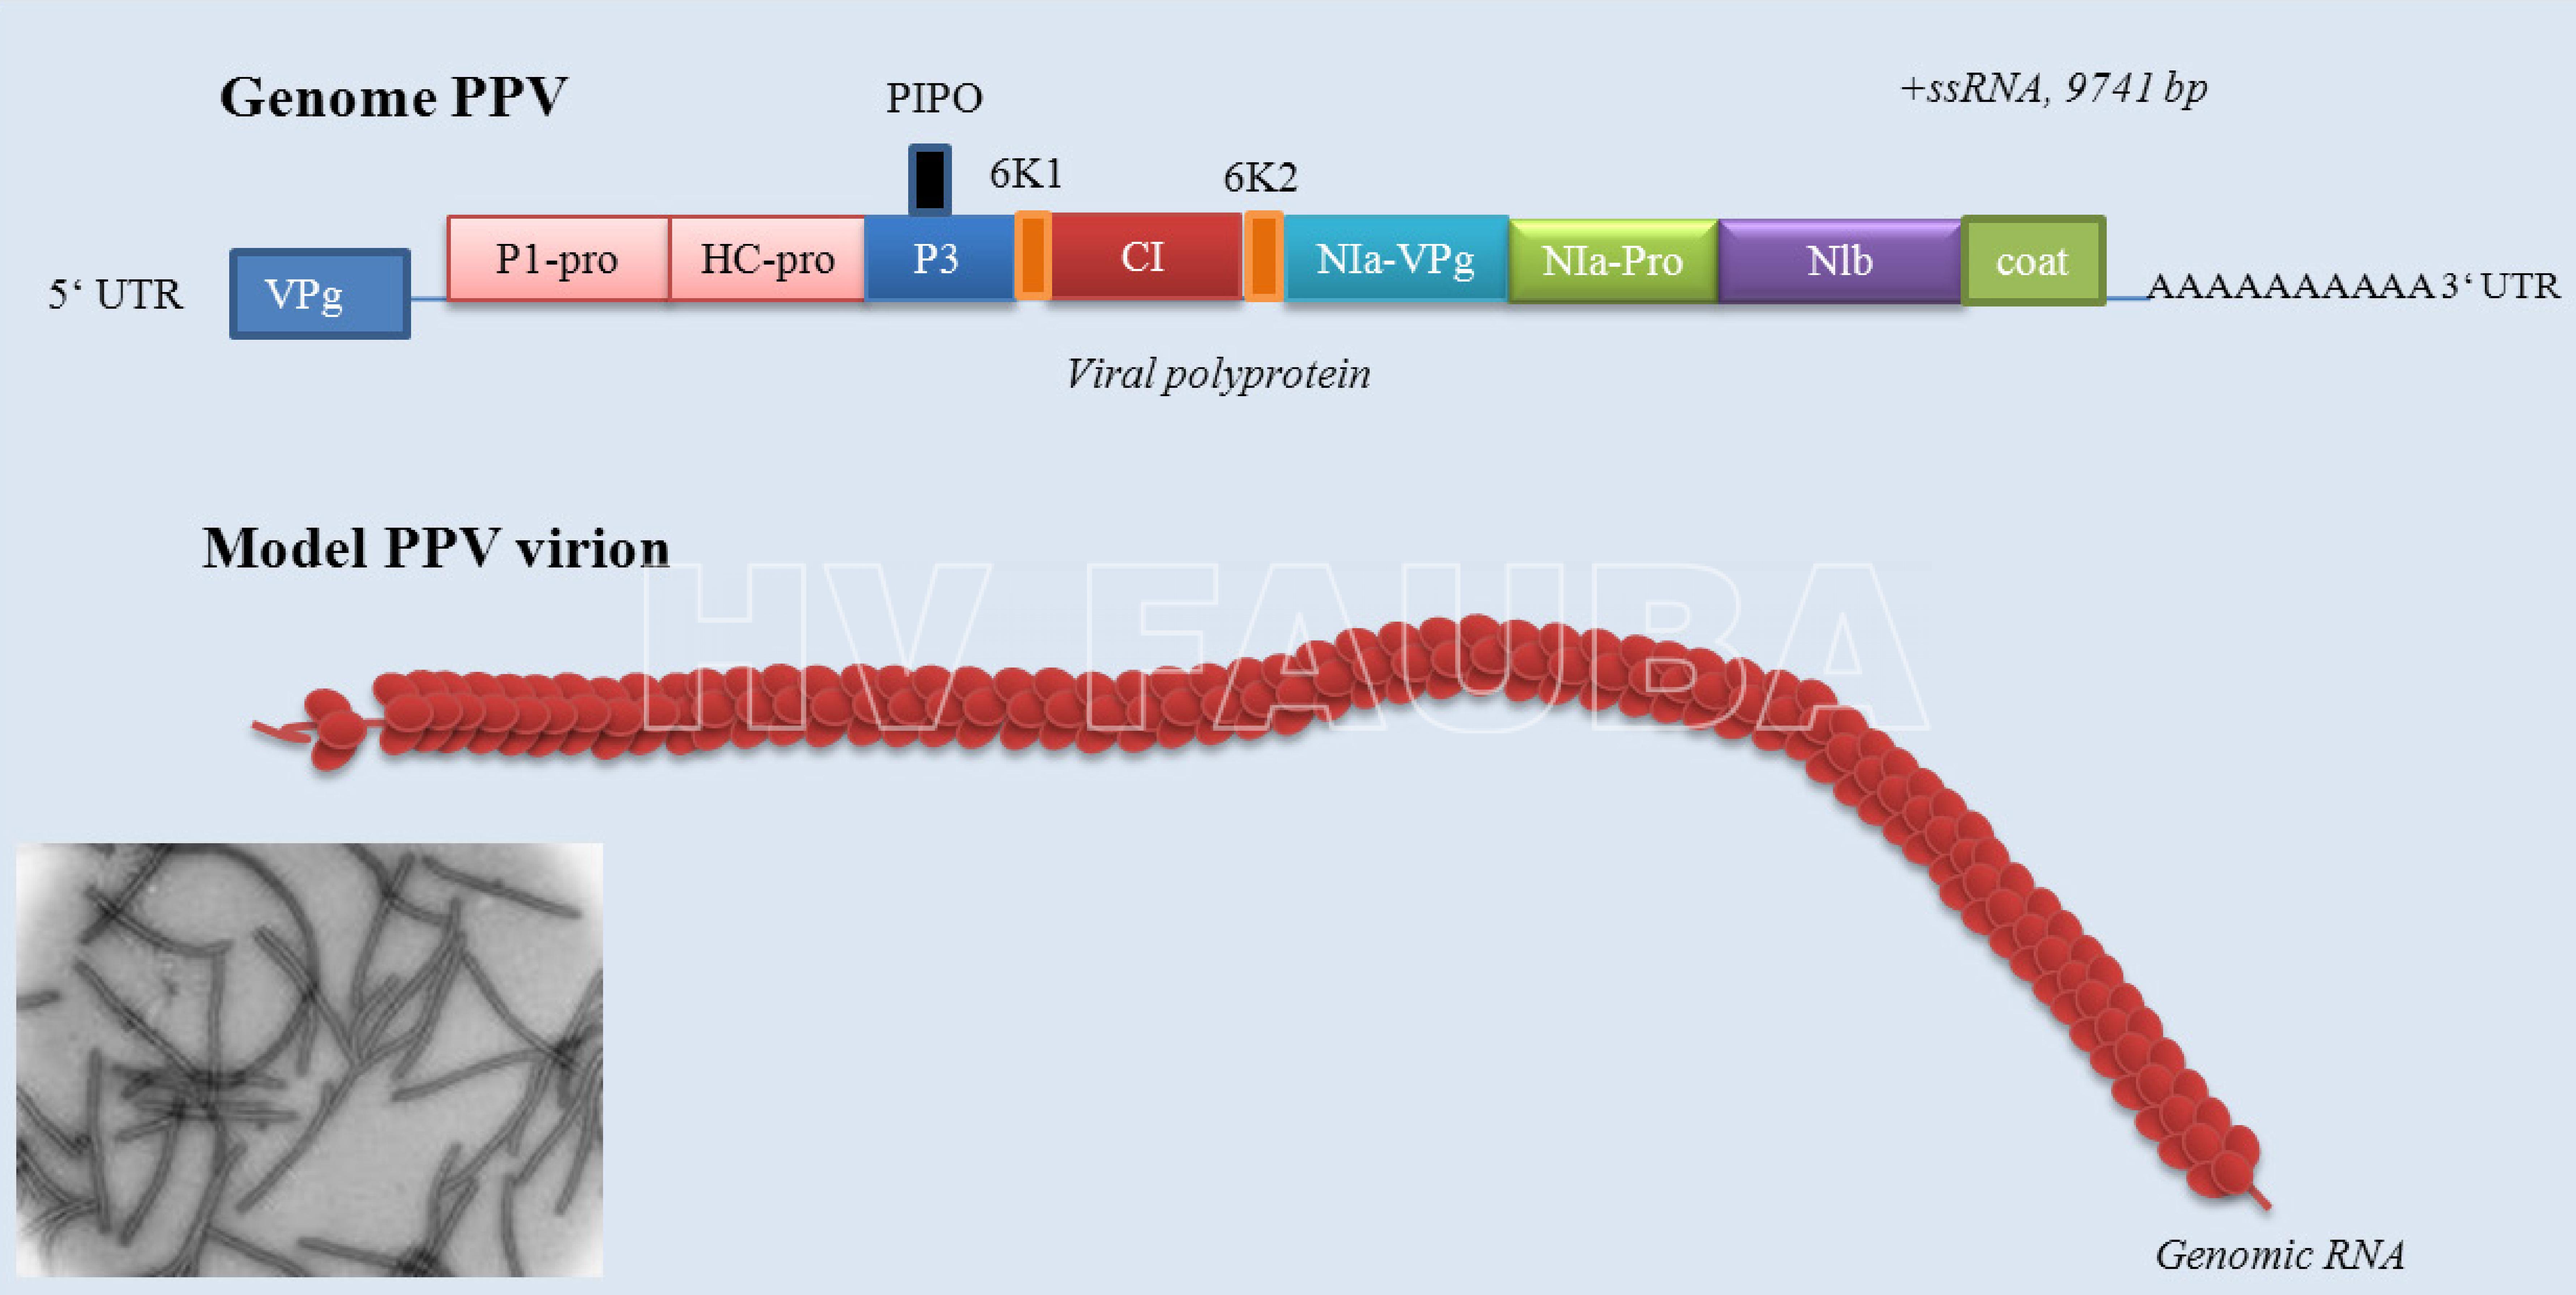 Genoma de Plum Pox Virus (Potyvirus). CP: proteina de la capside; P1: P1 proteinasa; HC-pro: componente de ayuda de la proteinasa; P3: proteina P3; PIPO: proteina; CI: proteina de inclusion cytoplasmatica; Nia-VPg: proteína viral ligada al genoma; NIa-Pro: proteína de inclusión nuclear a; Nib: proteína de inclusión nuclear N (ARN polimerasa dirigida por ARN). Fuente: Sochor et al., 2012